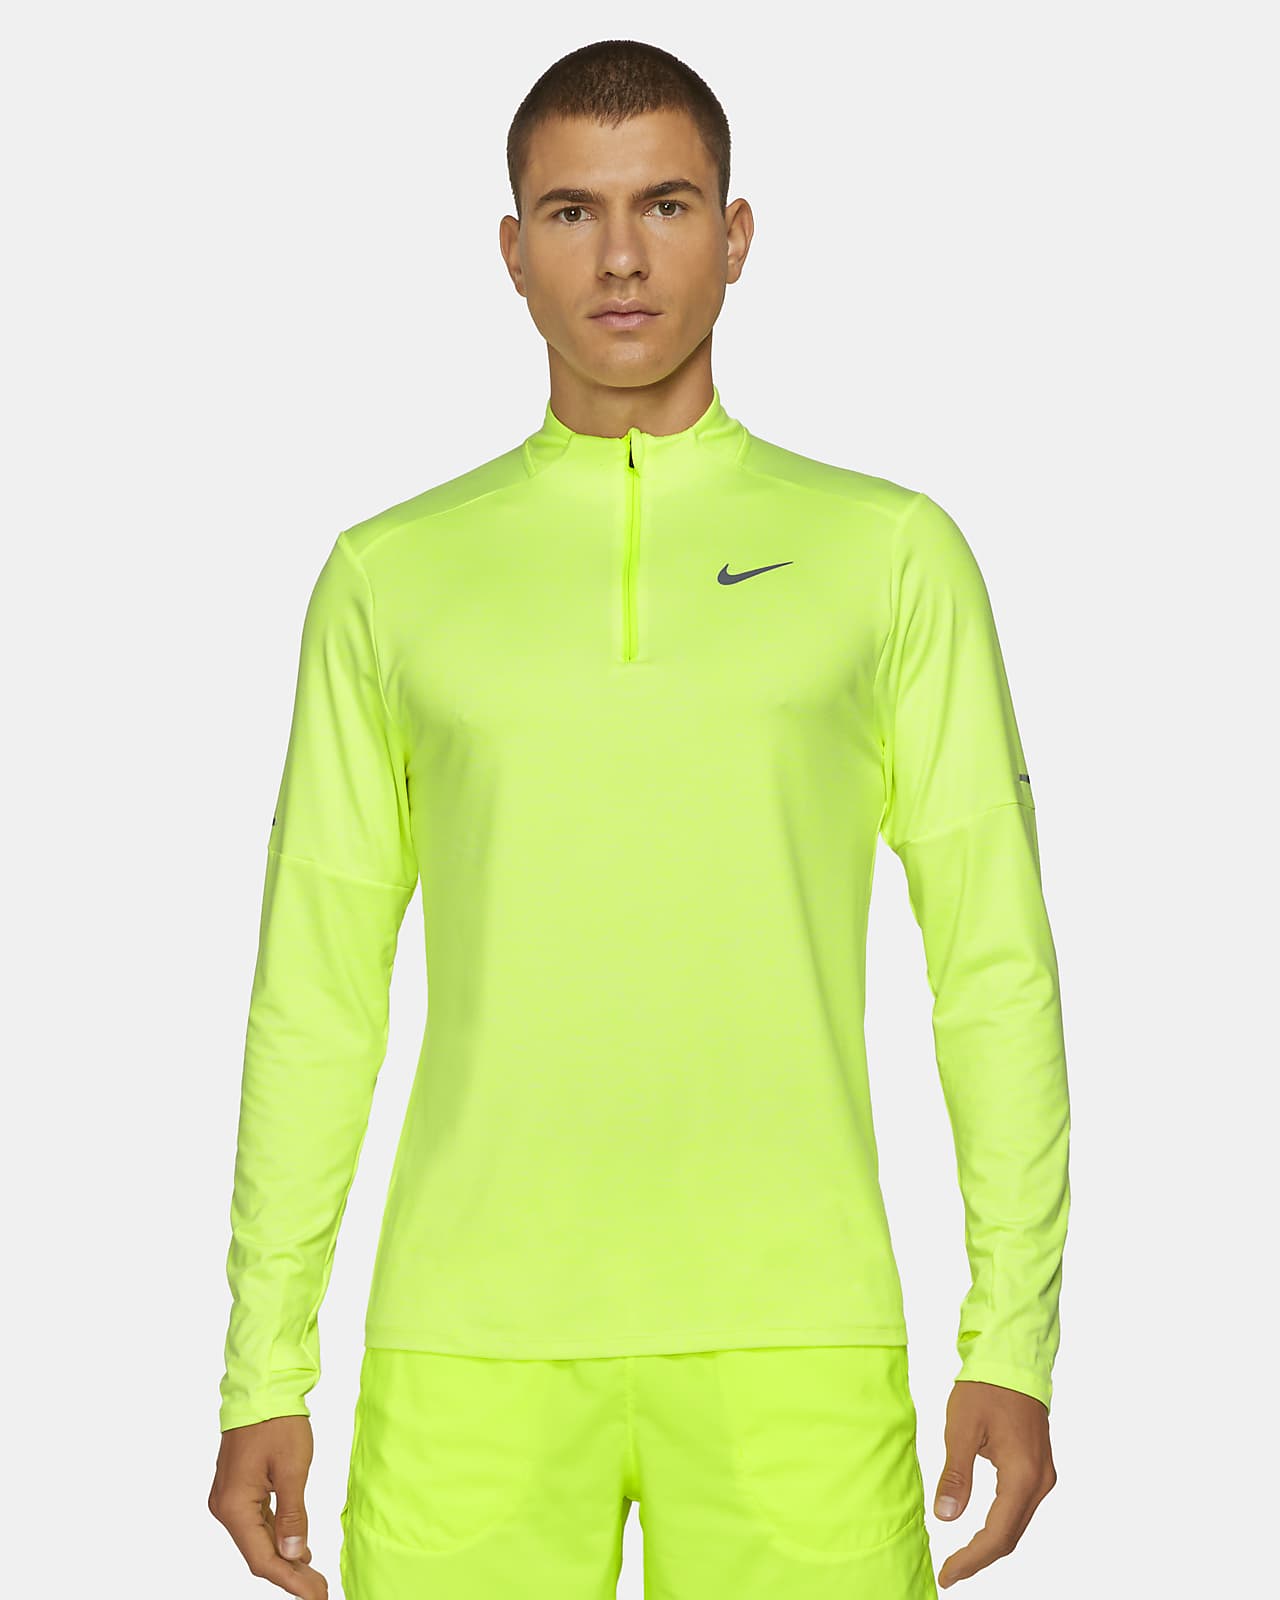 Мужская беговая футболка с молнией 1/4 Nike Dri-FIT